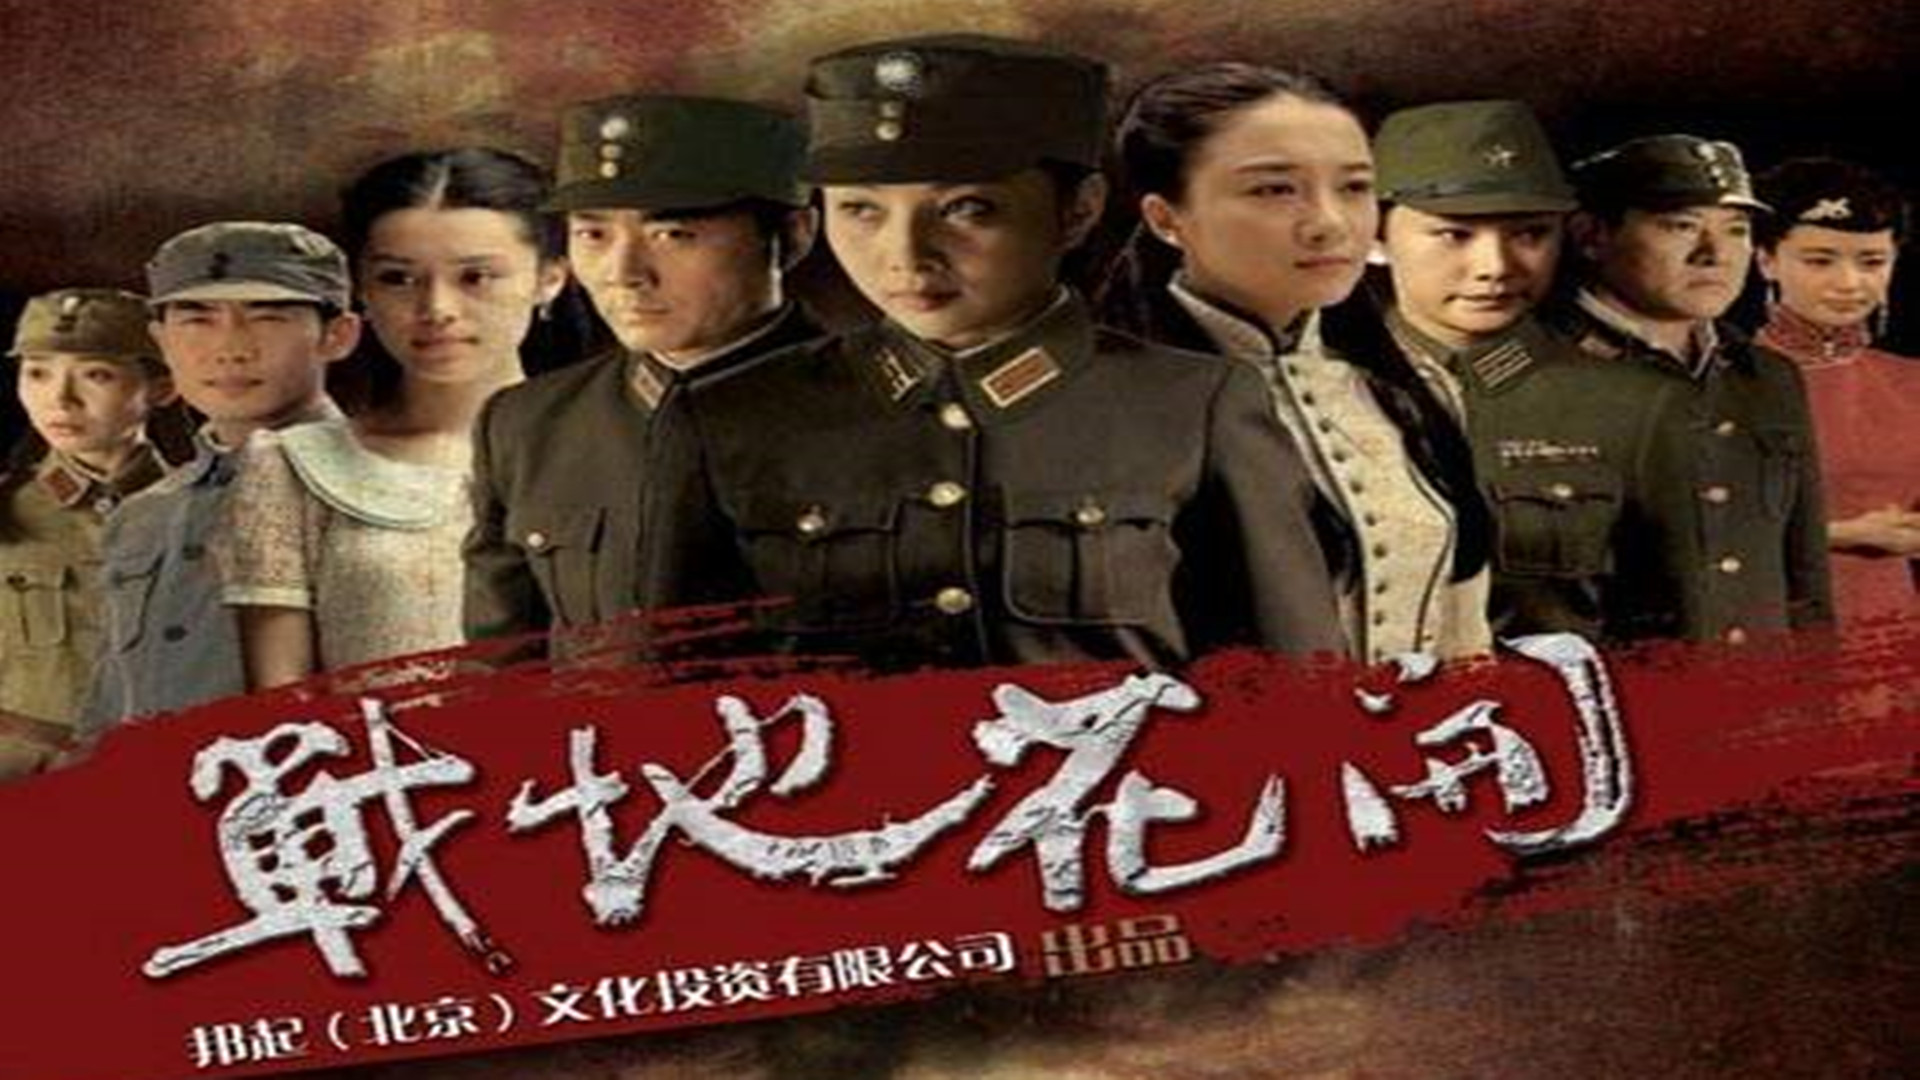 2012年,殷桃与沈晓海主演历史革命电视剧《战地花开》,这部剧以长沙